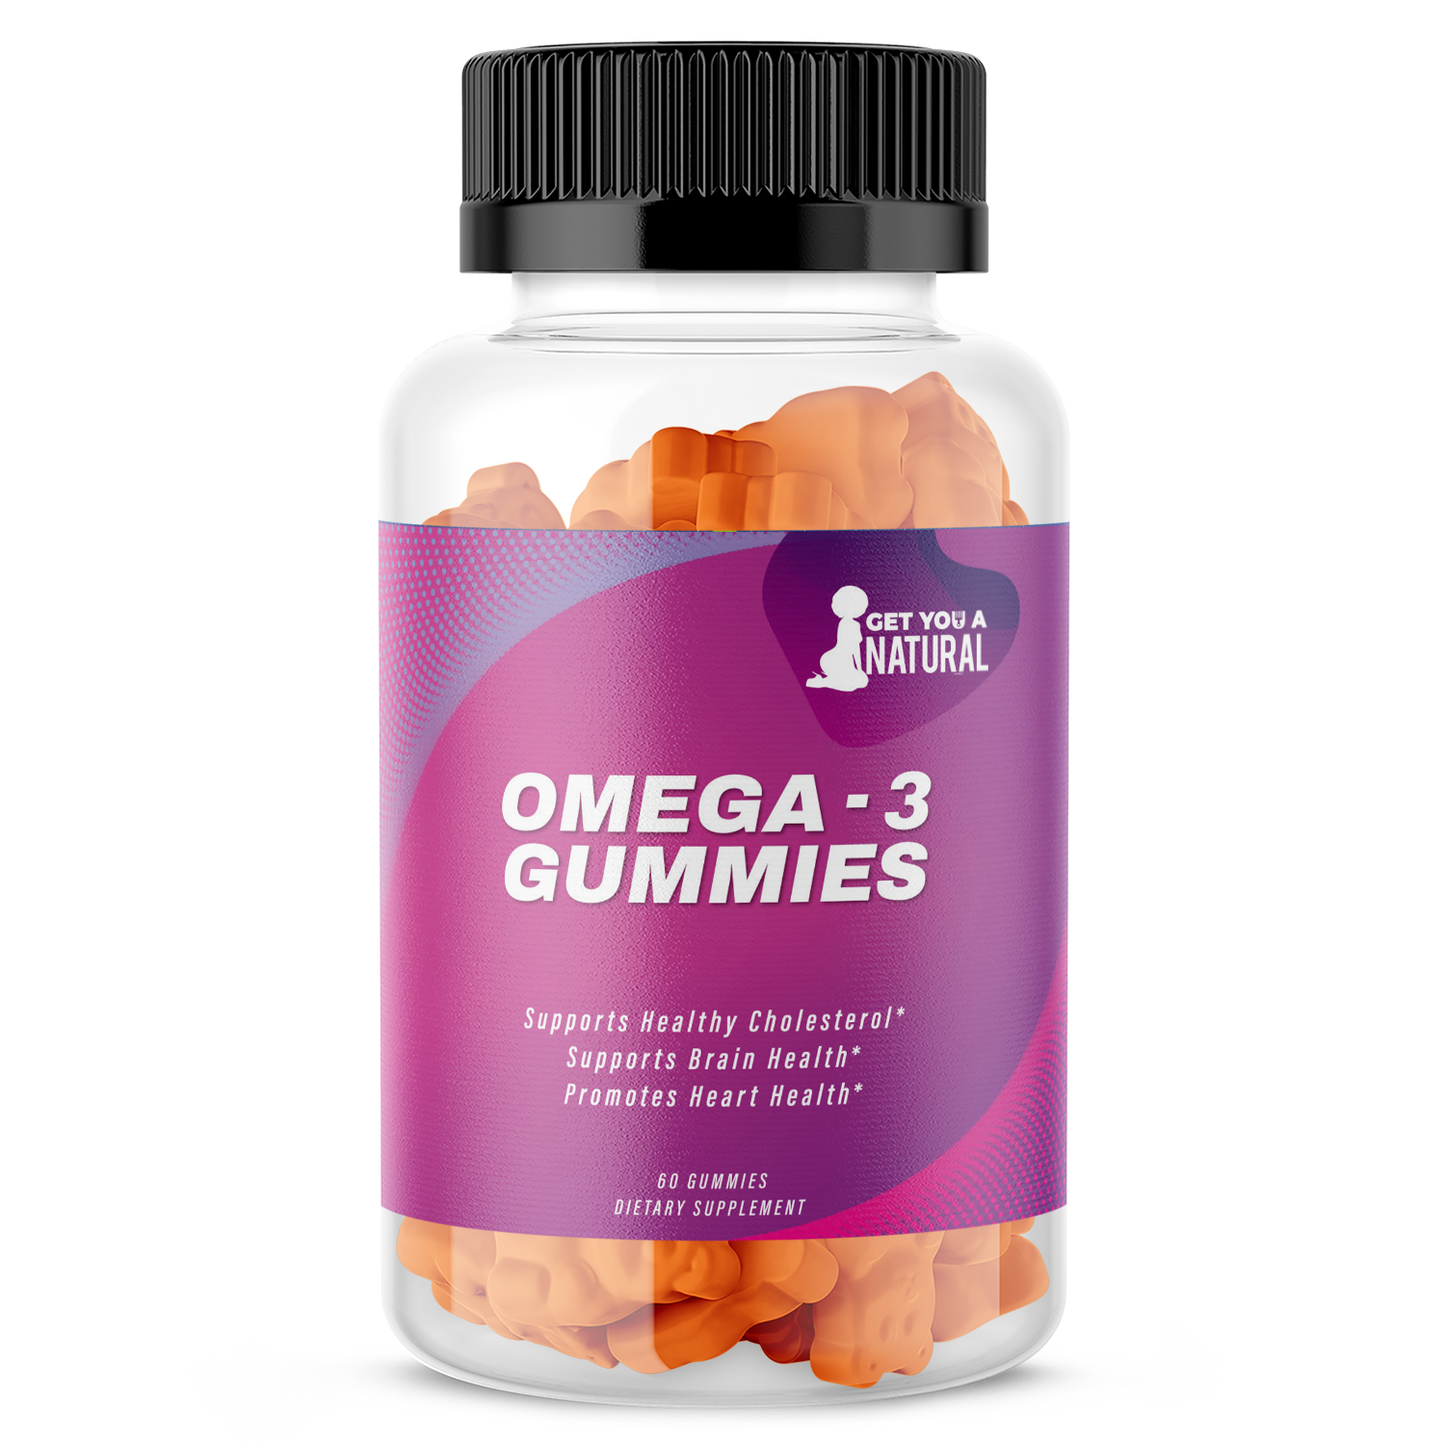 Omega - 3 Gummies